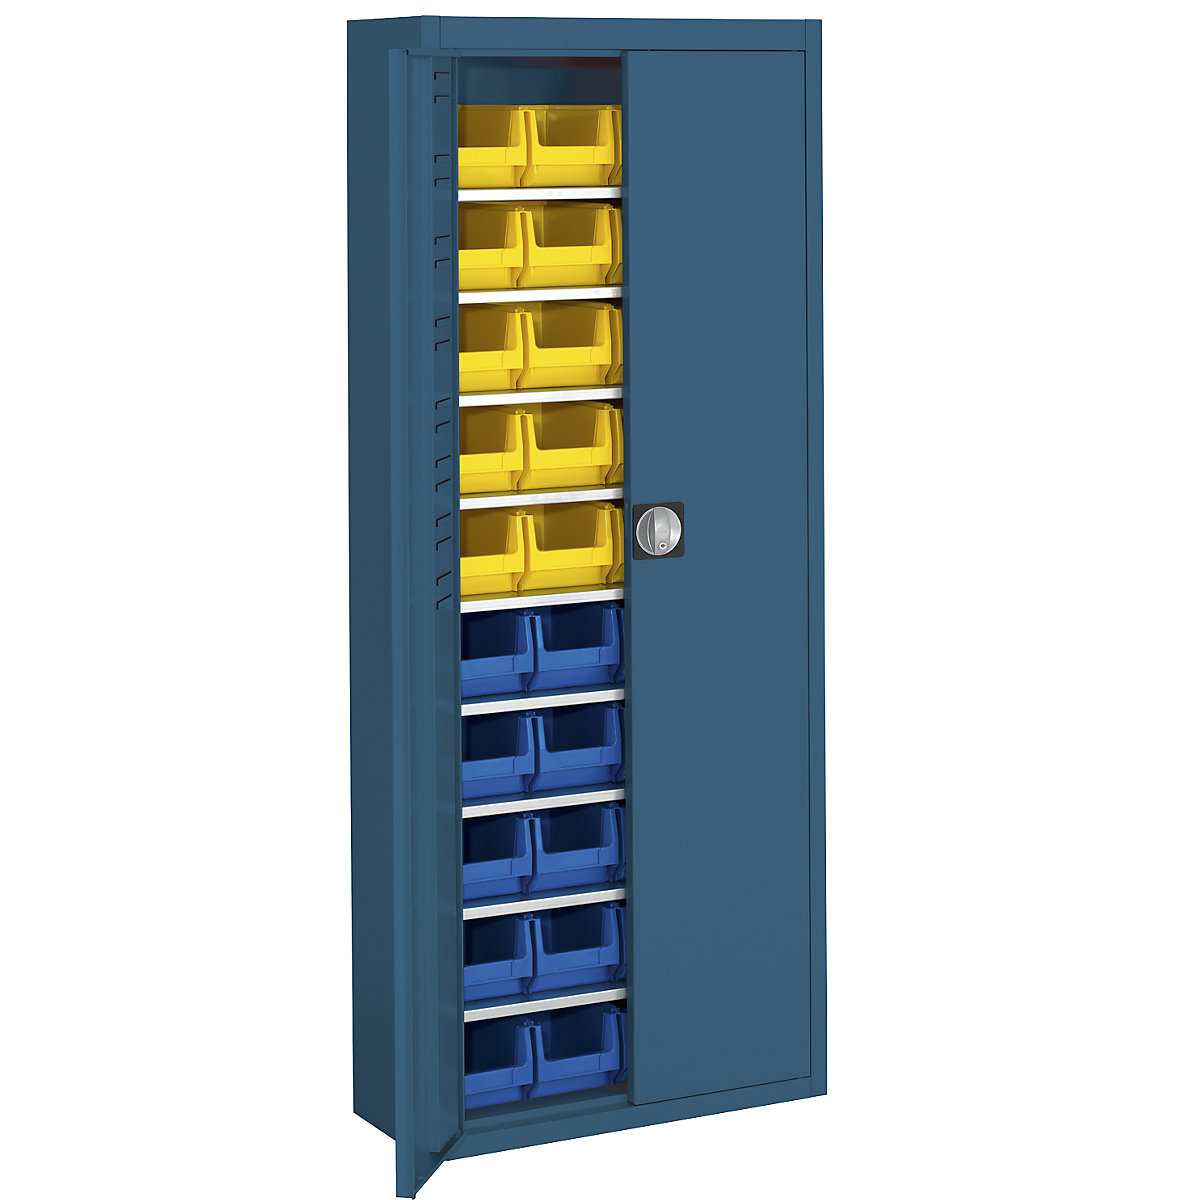 Skladiščna omara z odprtimi skladiščnimi posodami – mauser, VxŠxG 1740 x 680 x 280 mm, ena barva, modra, 40 posod-1